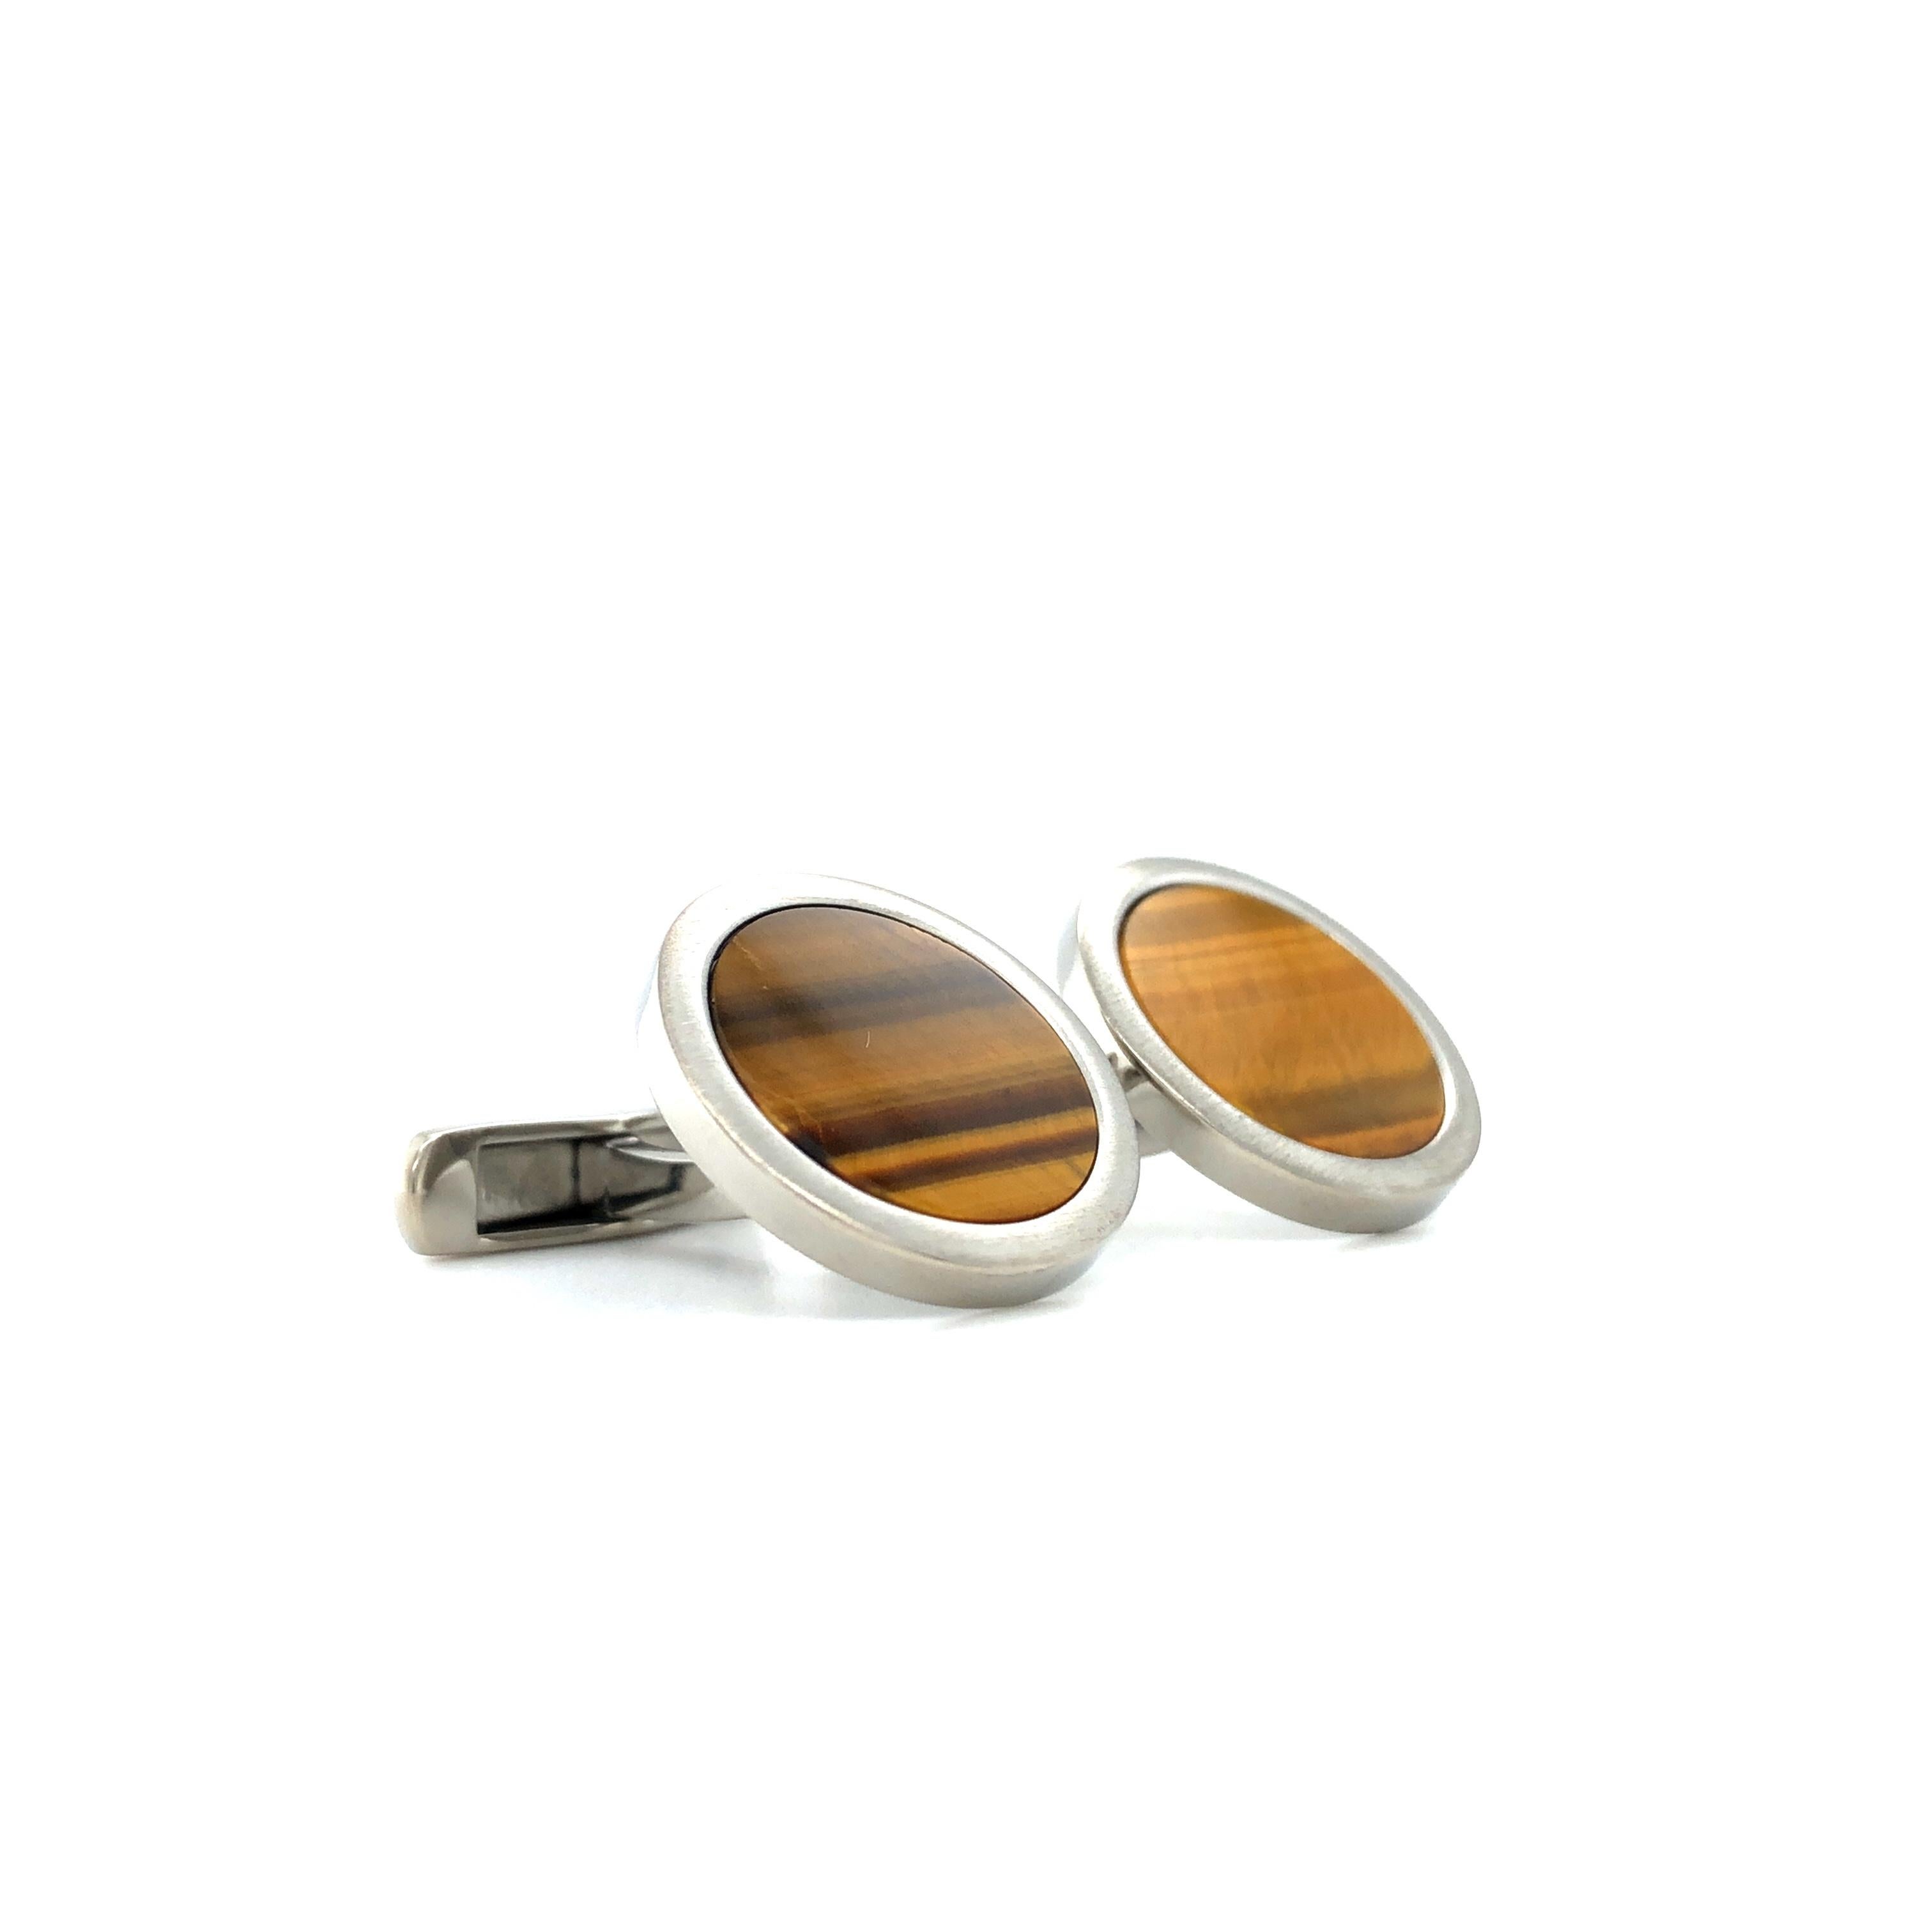 Round Cufflinks - Stainless Steel - Tiger Eye Gemstone Inlay - Diameter 19 mm In New Condition For Sale In Pforzheim, DE